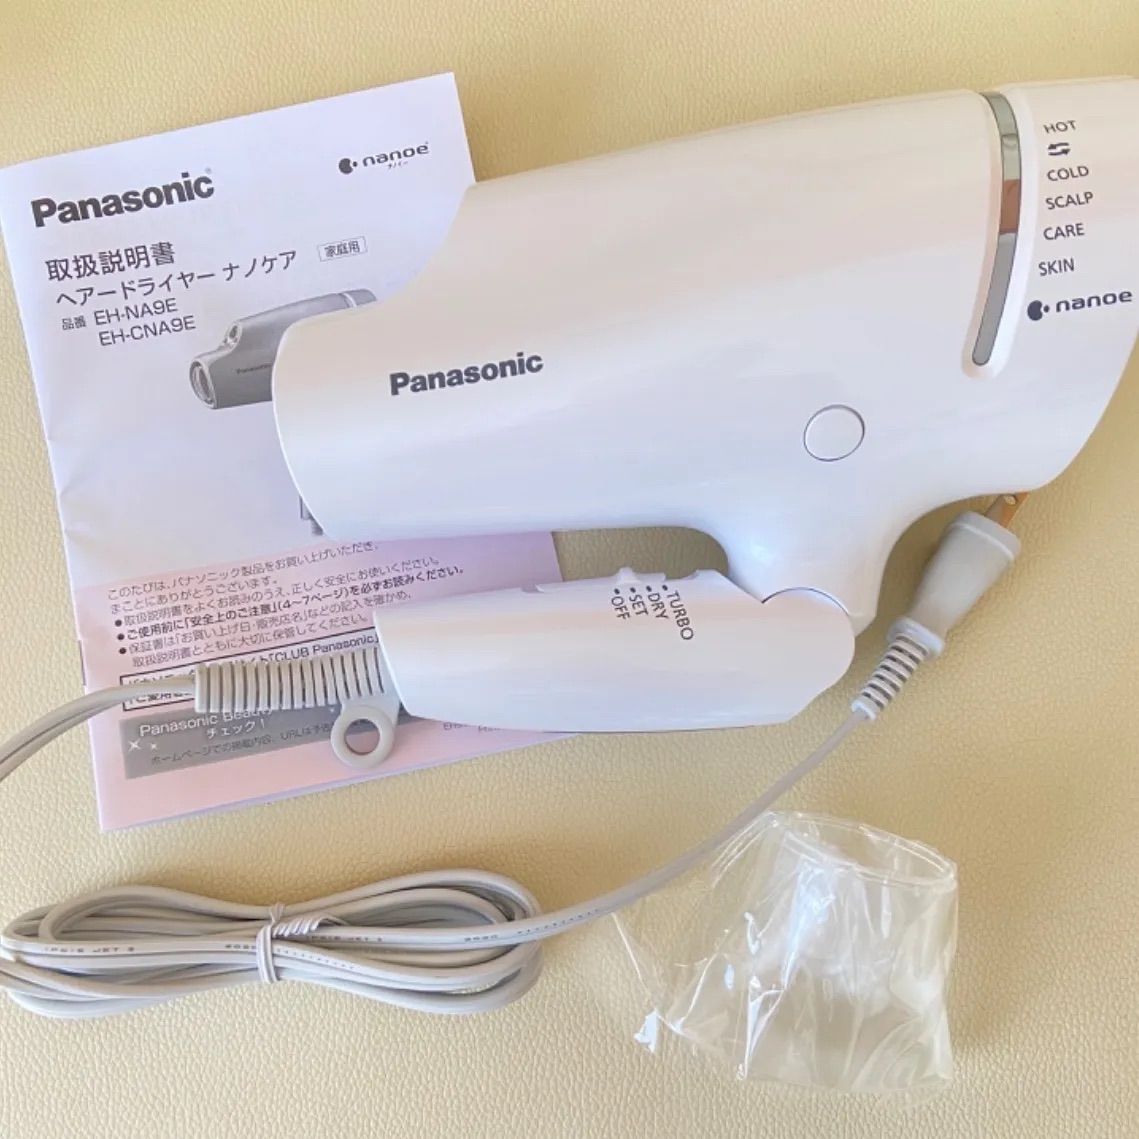 Panasonic nanoeヘアドライヤー EH-CNA9E-W WHITE 【95%OFF!】 - ヘアドライヤー